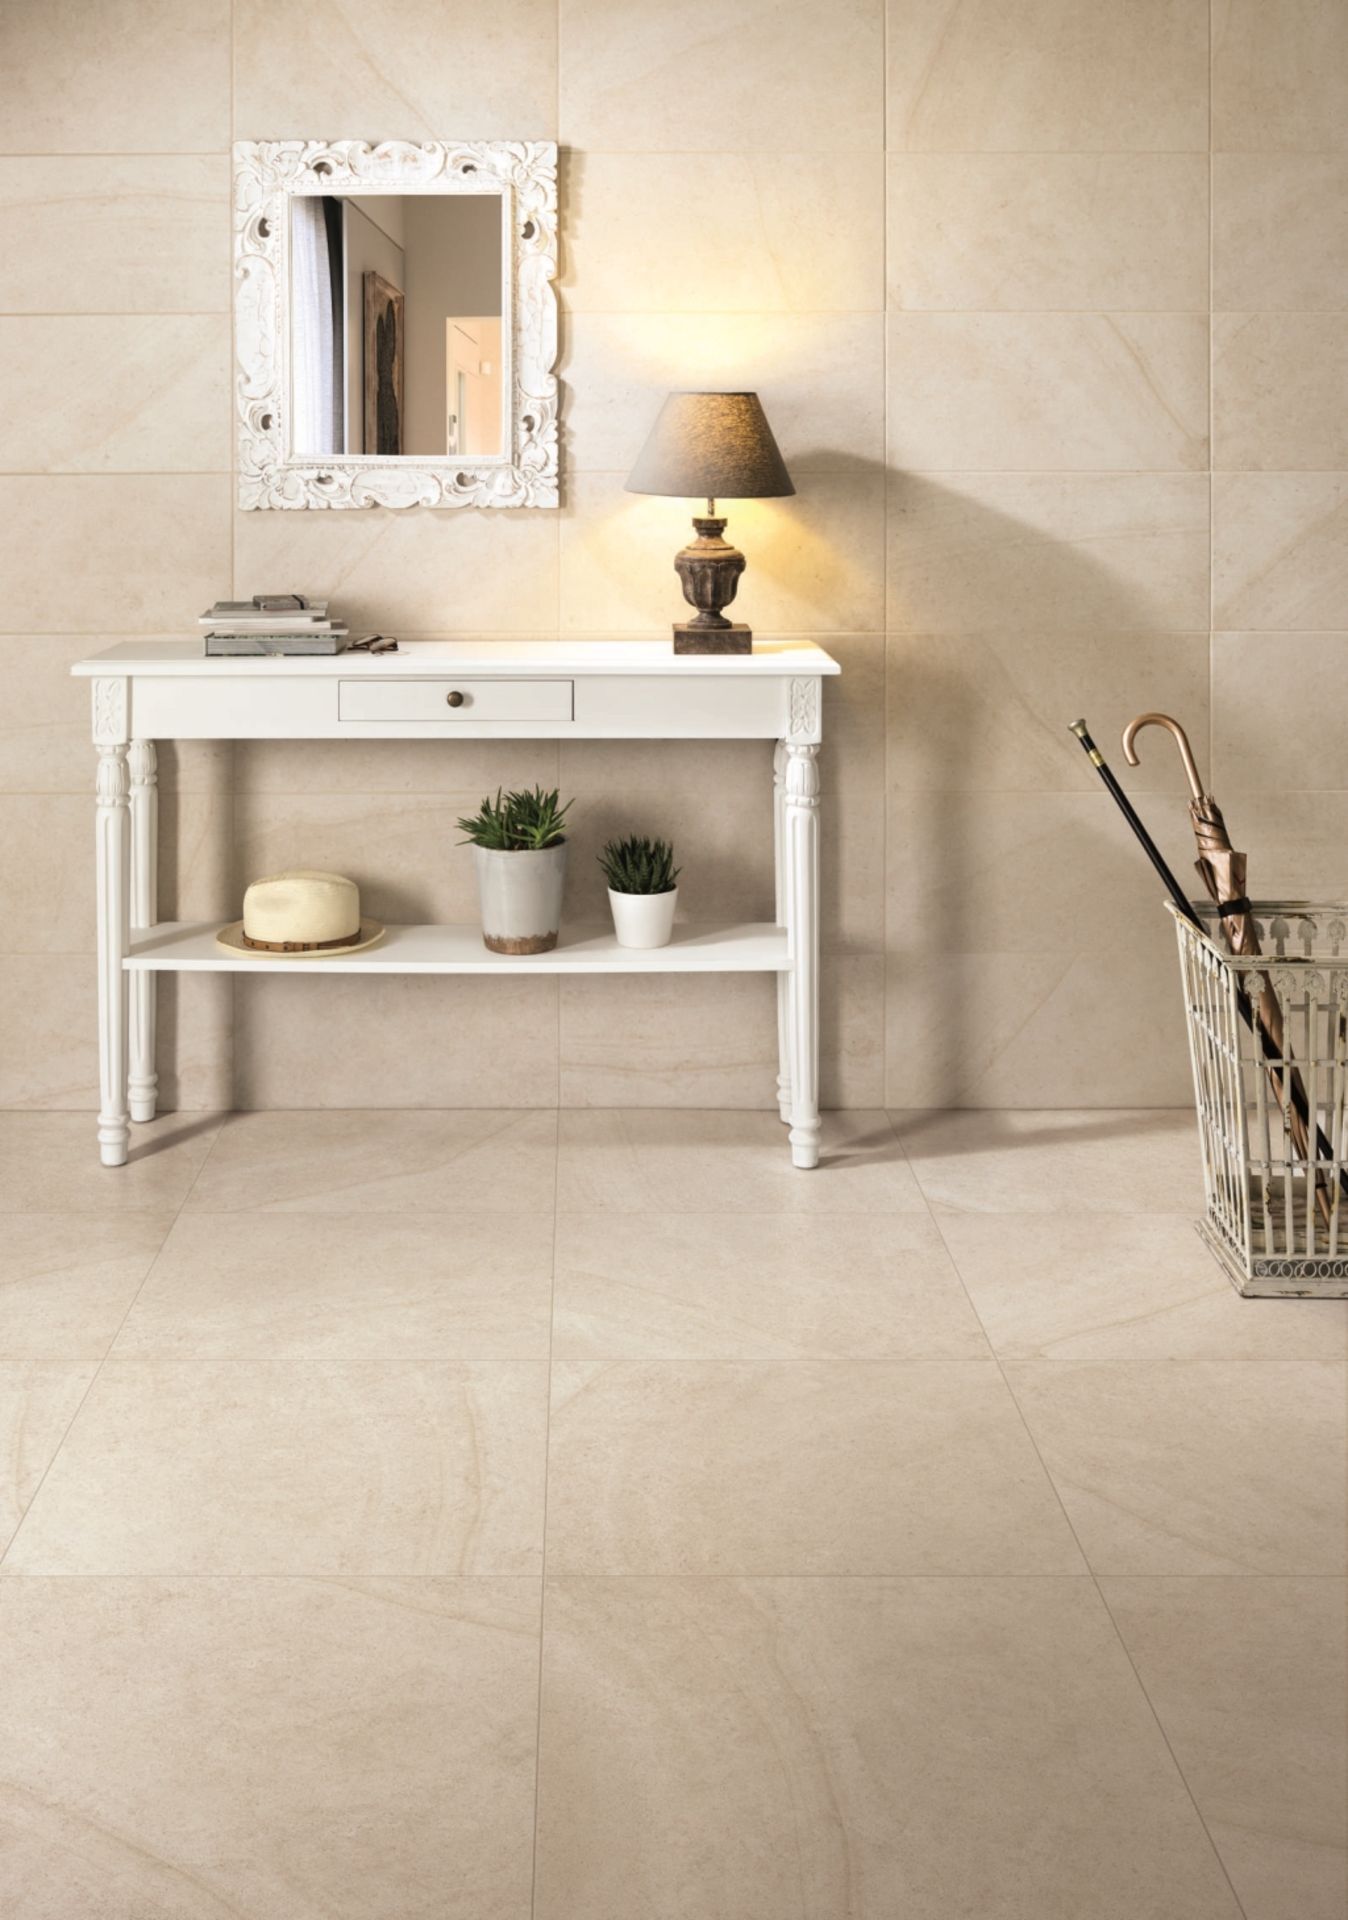 Maison Blanc 9MM 60X60CM High Quality Italian Porcelain tiles 2 pallets - Image 2 of 3